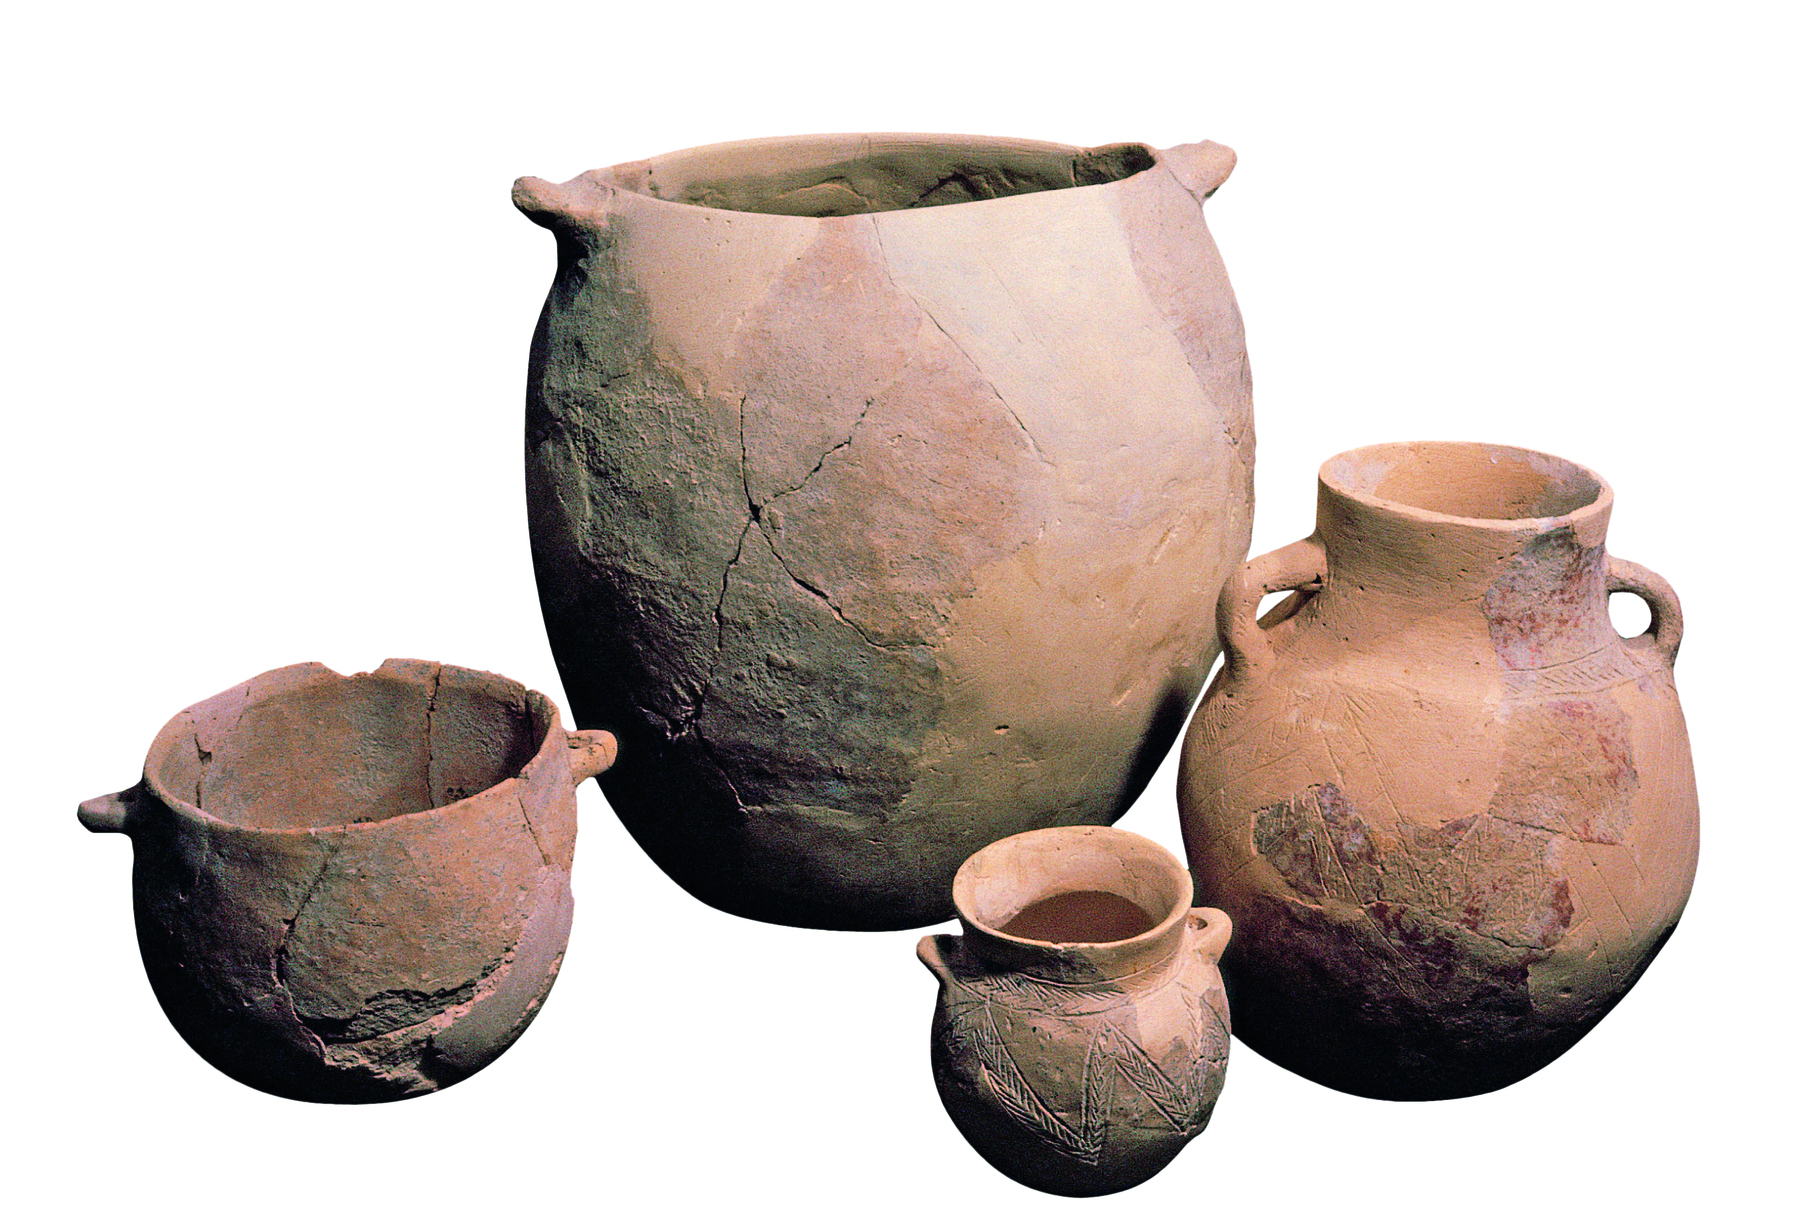 Fotografia. Quatro potes feitos de cerâmica com diversos tamanhos e formas, sendo um pequeno e um grande de boca larga, e um pequeno e um grande de boca afunilada, parecidos com jarros. Ambos apresentam duas alças laterais.